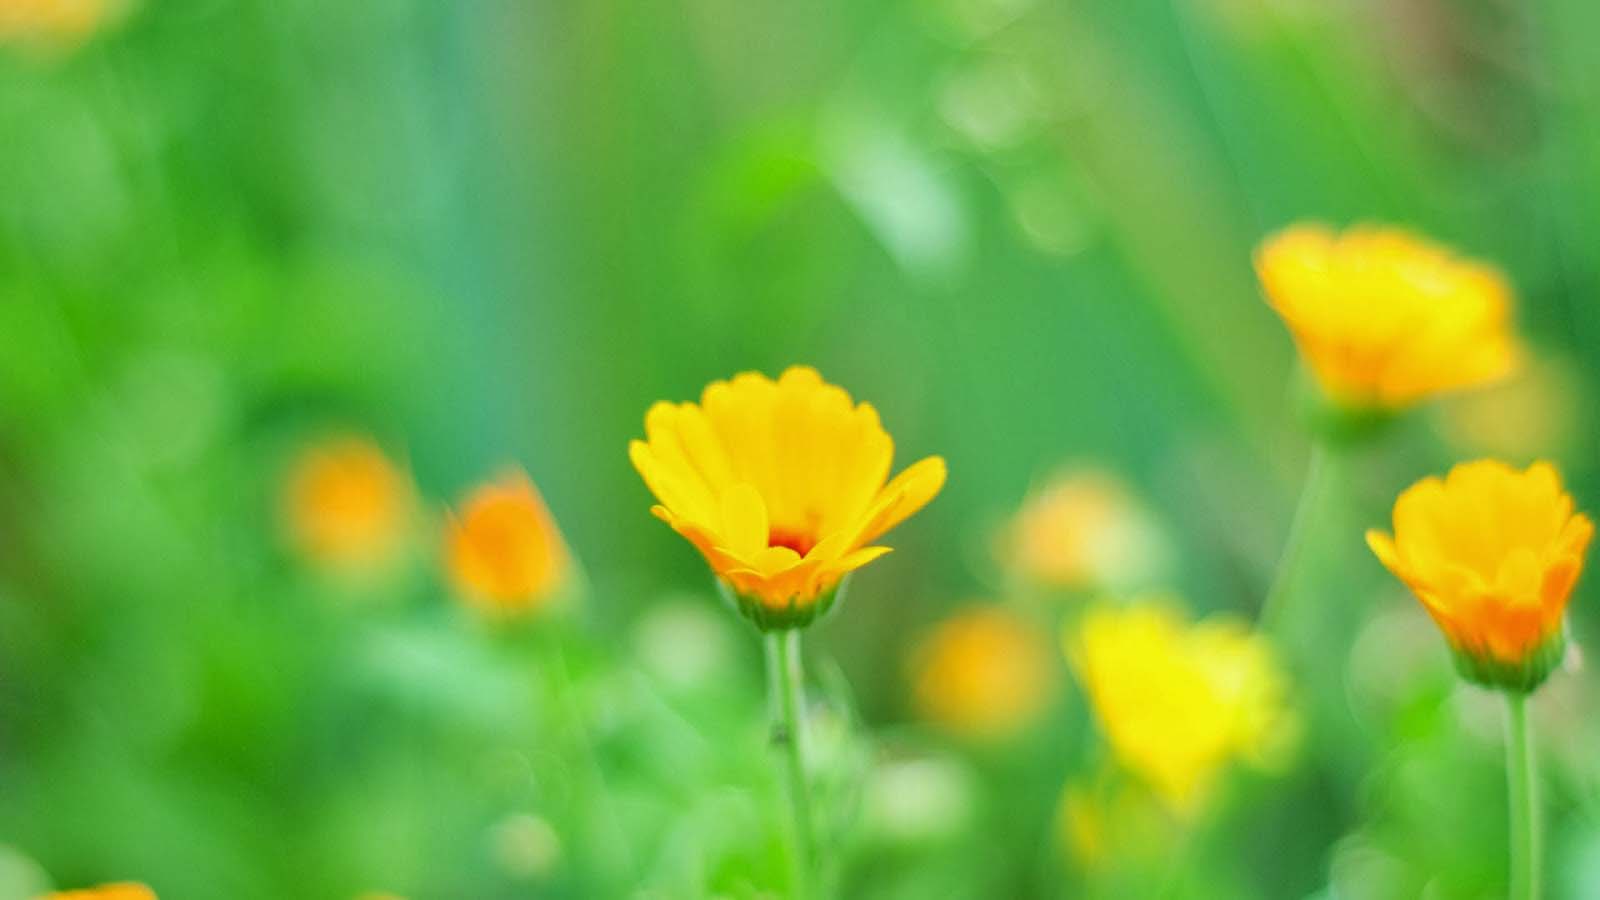 Tổng hợp những hình ảnh đẹp nhất về nụ hoa - [Kích thước hình ảnh: 1600x900 px]